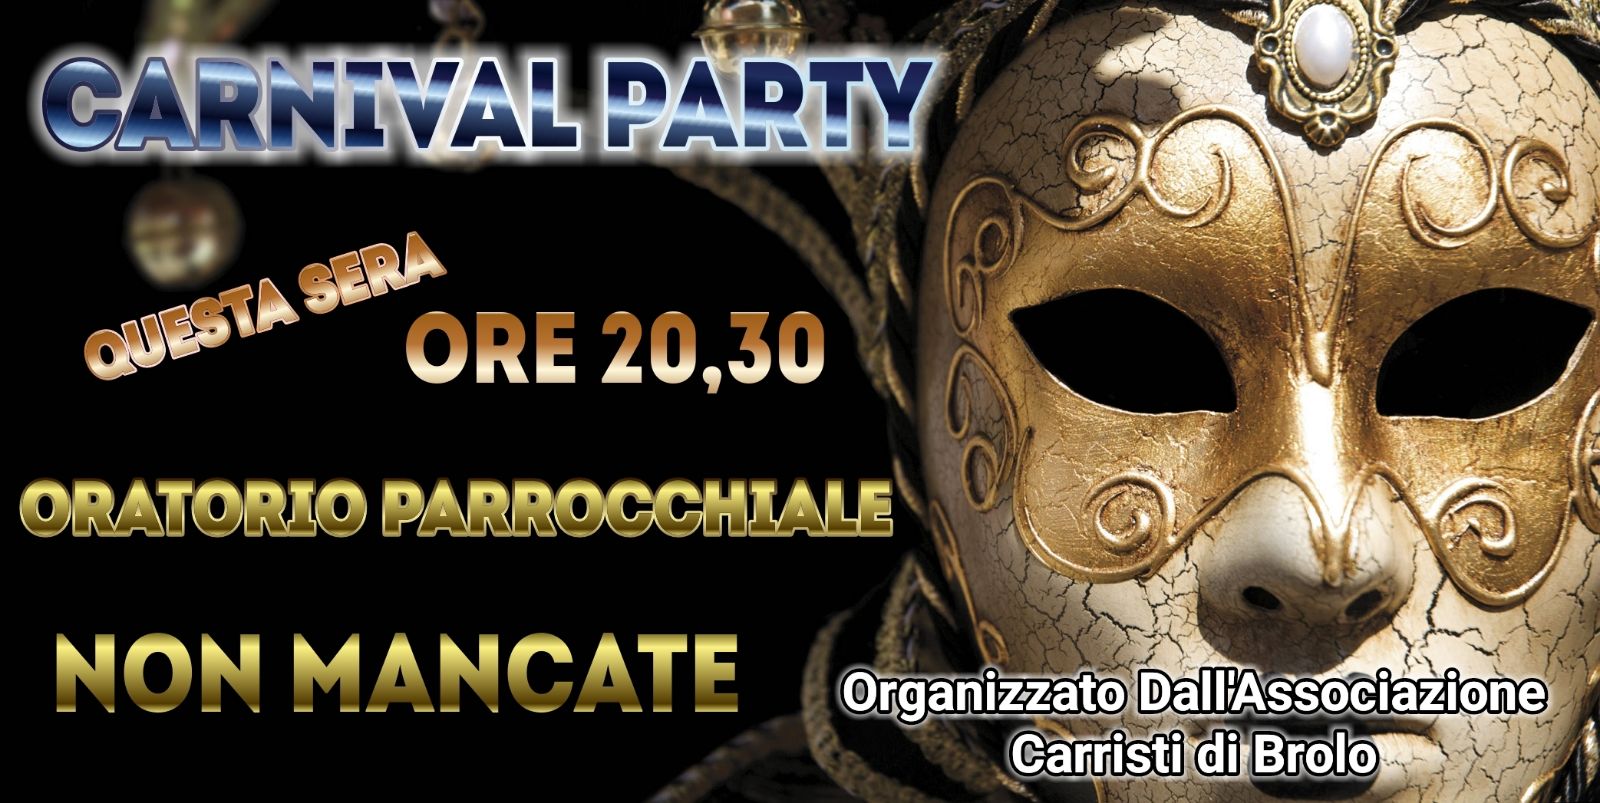 Brolo – Carnevale 2018: se il maltempo farà rinviare la sfilata di domani…si balla al Palatenda! Stasera il Carnival Party